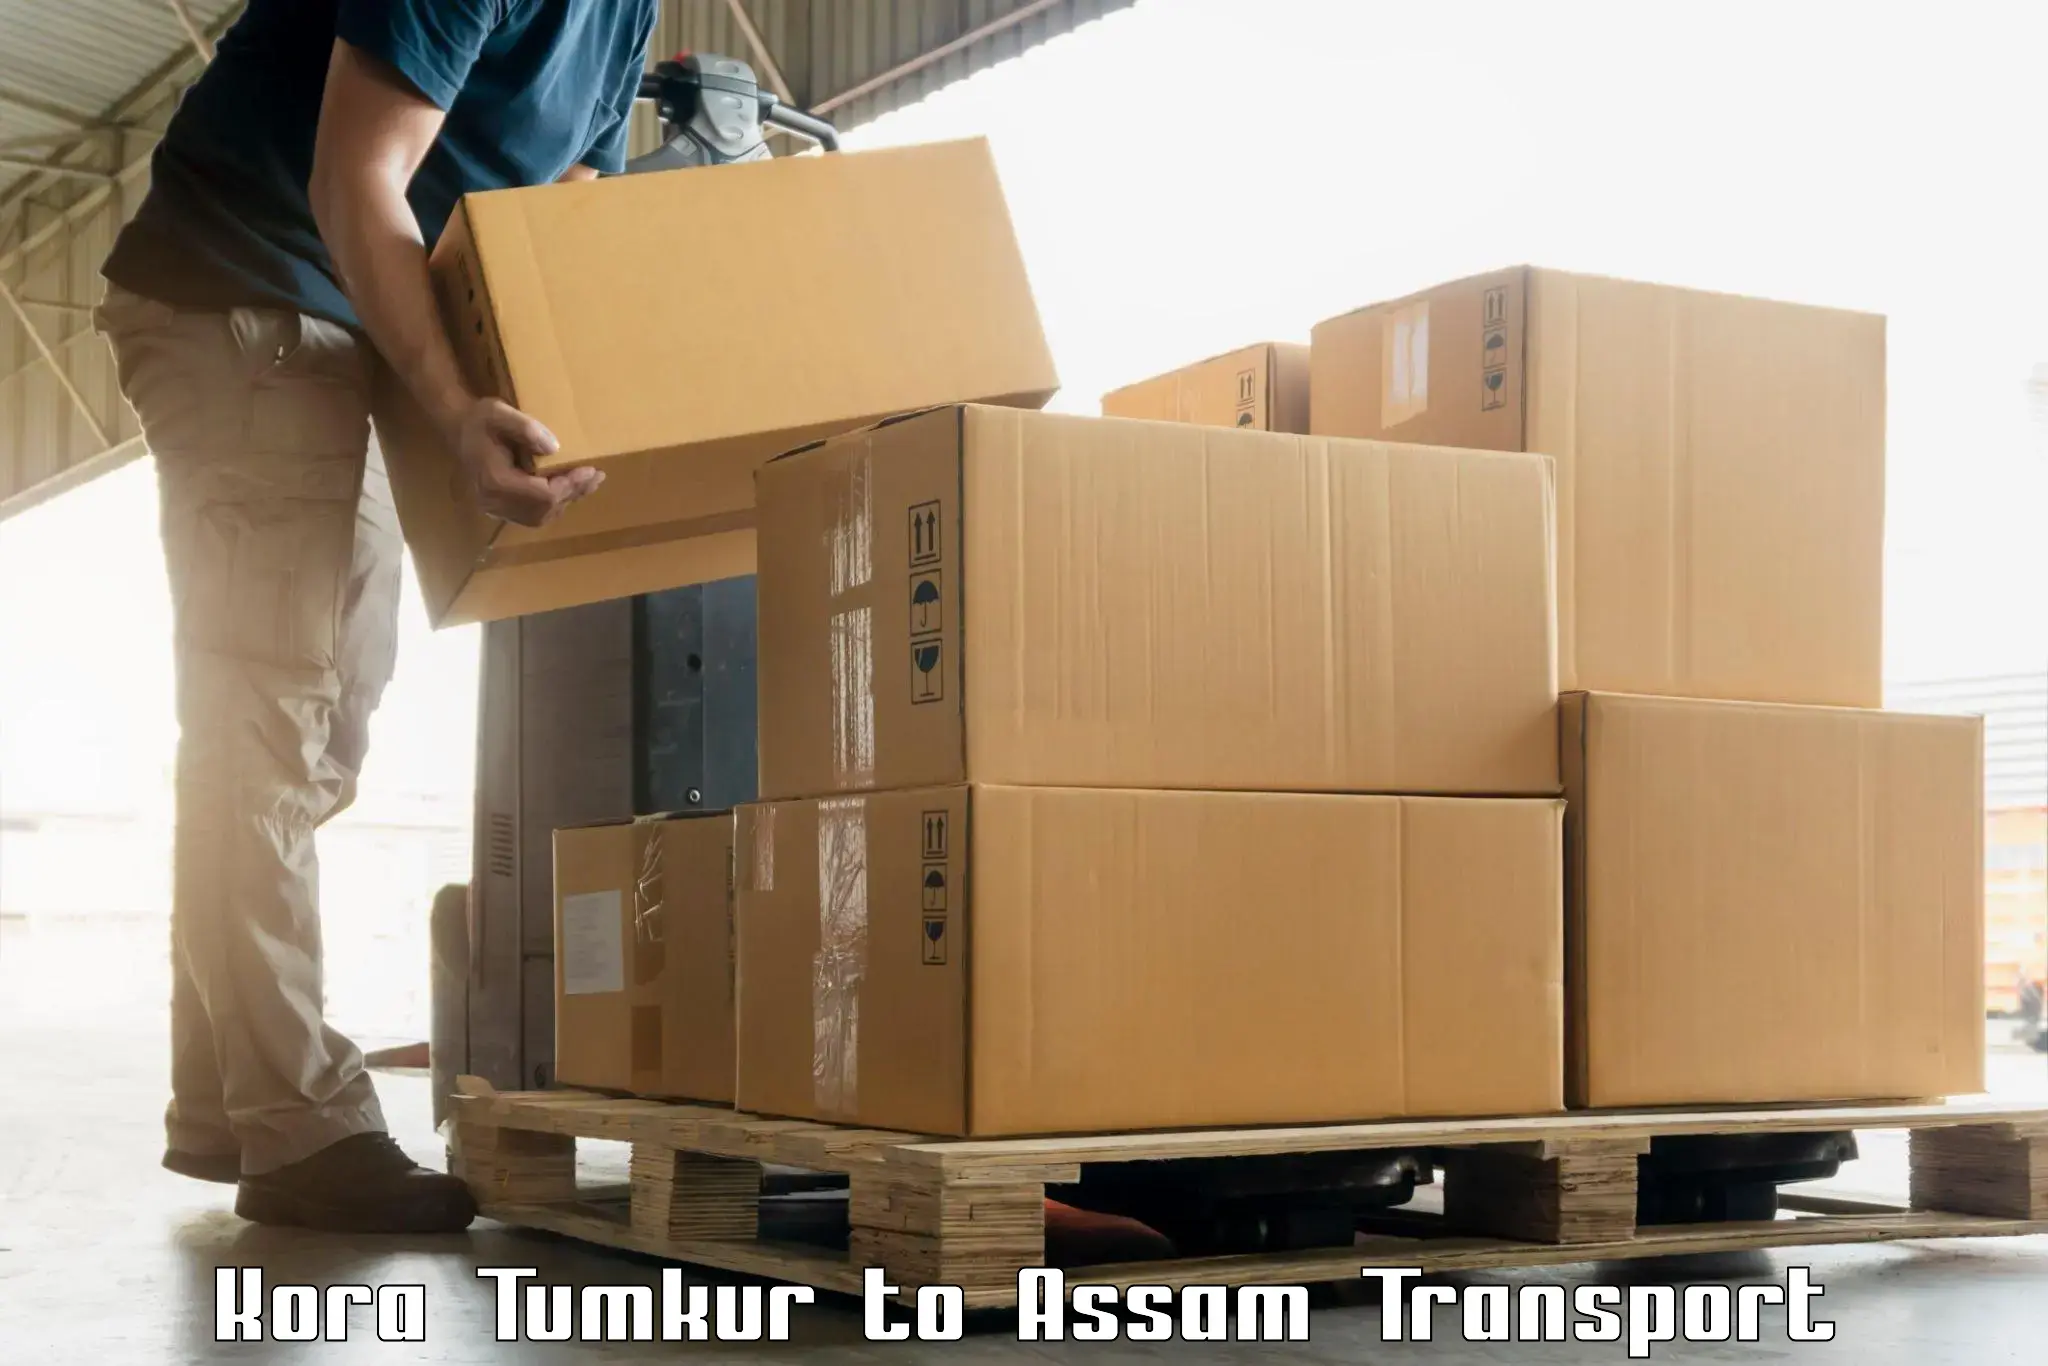 Cargo transportation services Kora Tumkur to Rangia